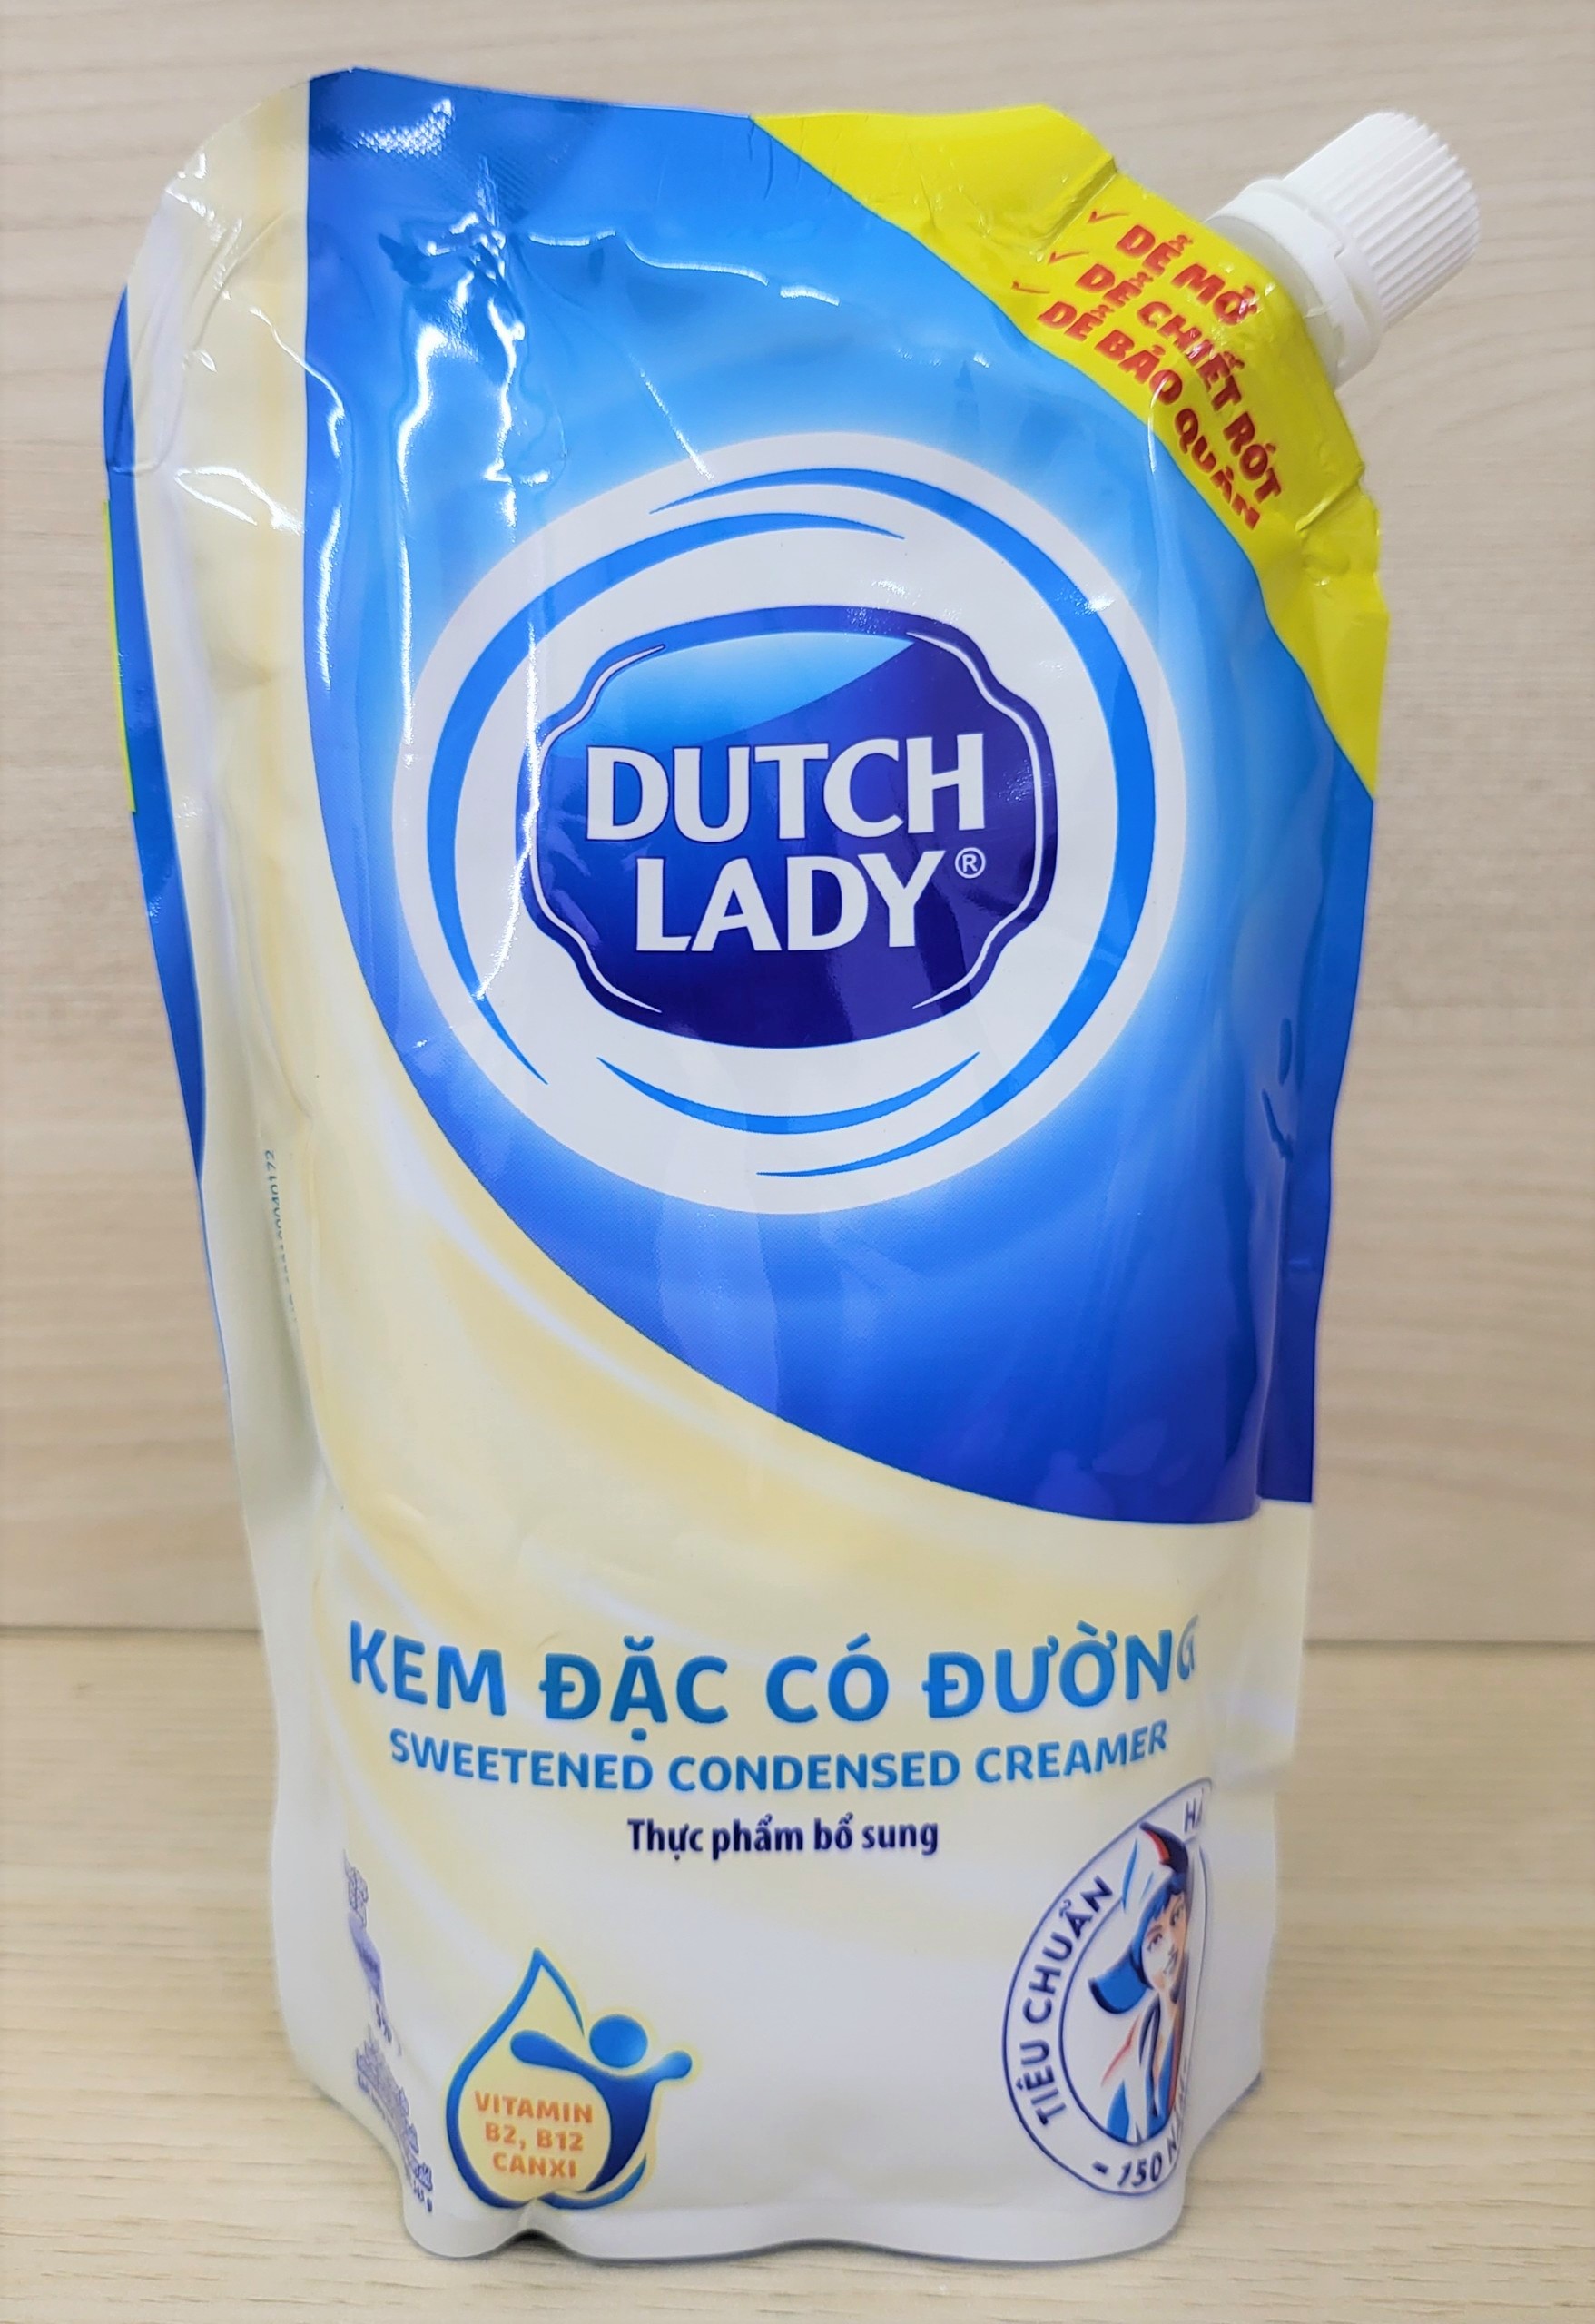 Túi 560g KEM ĐẶC CÓ ĐƯỜNG Cô Gái Hà Lan DUTCH LADY Sweetened Condensed